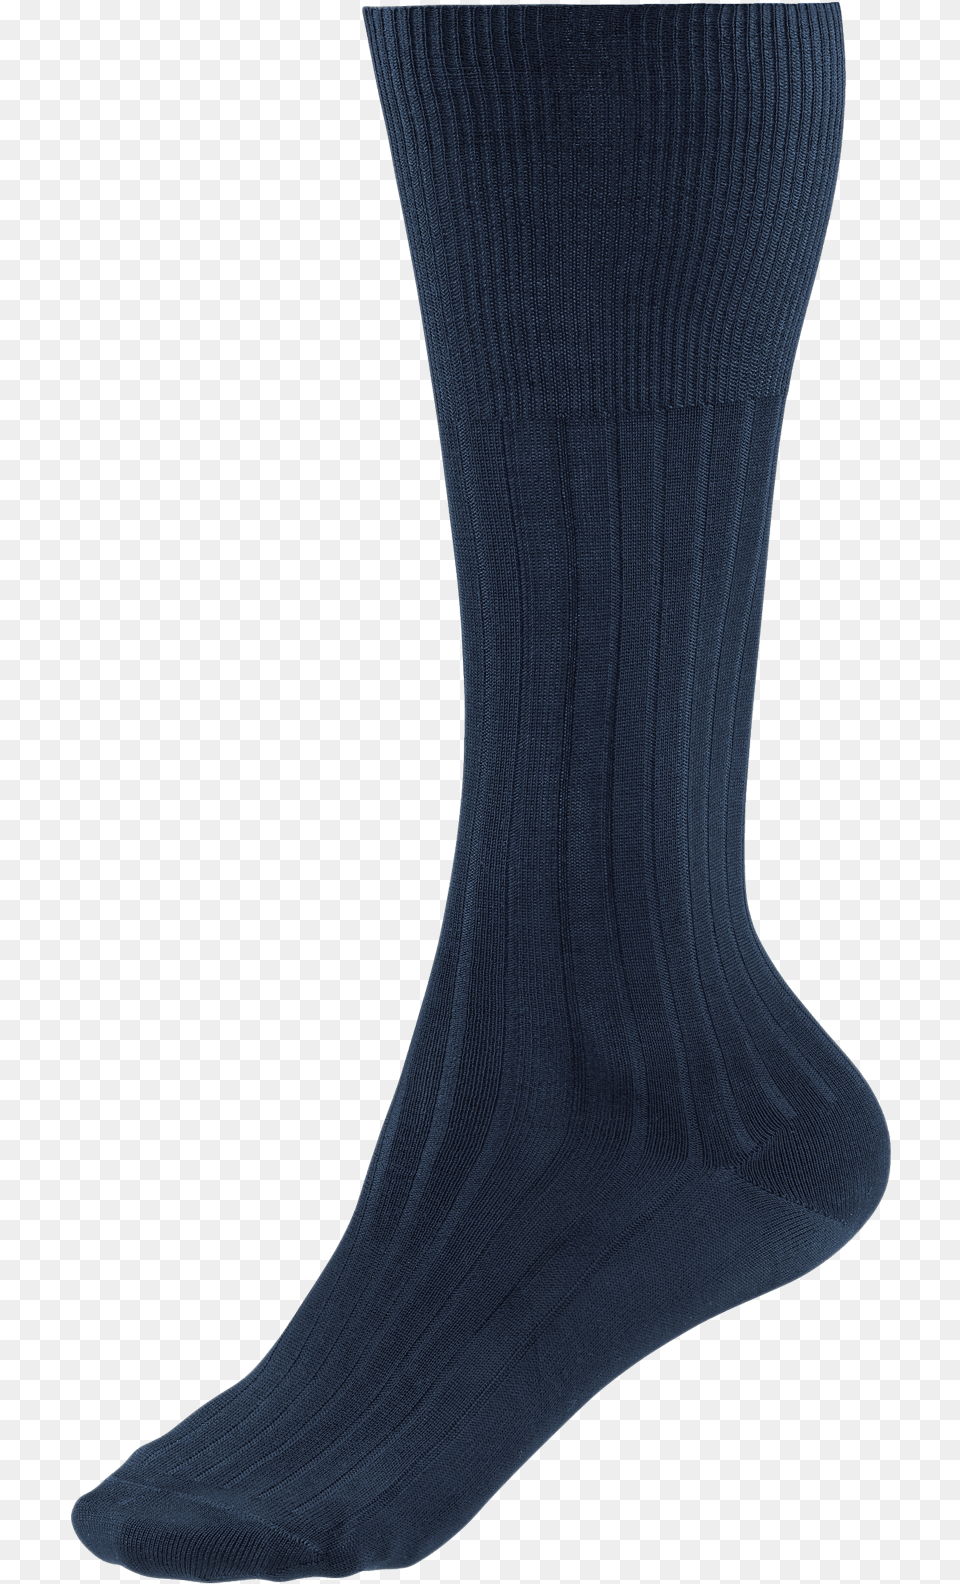 Kniestrmpfe In Navy Sock, Clothing, Hosiery Png